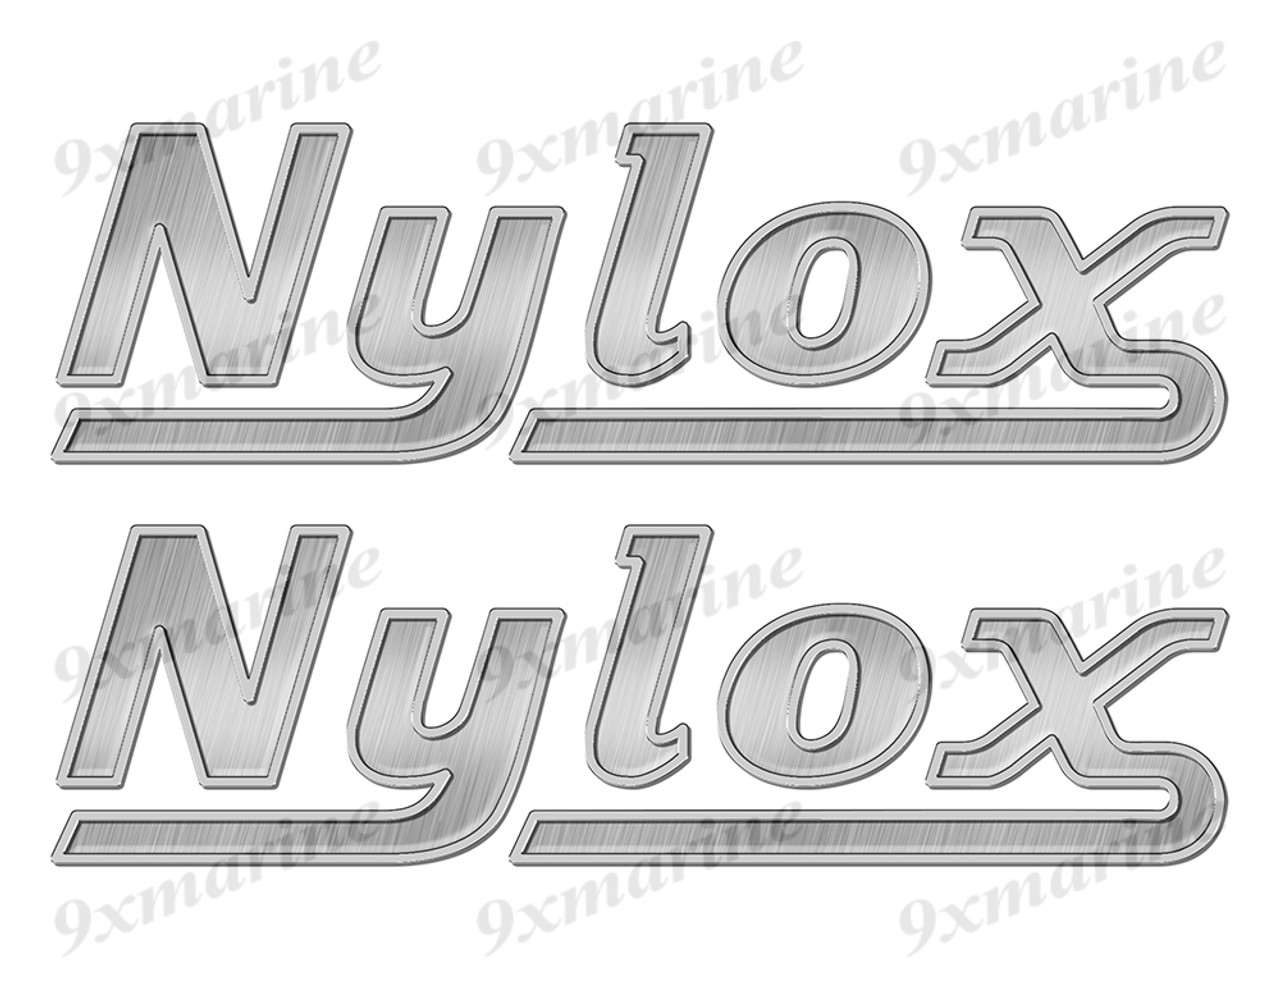 Nylox boat Stickers "3D Vinyl Replica" of metal originals - 10"x3"